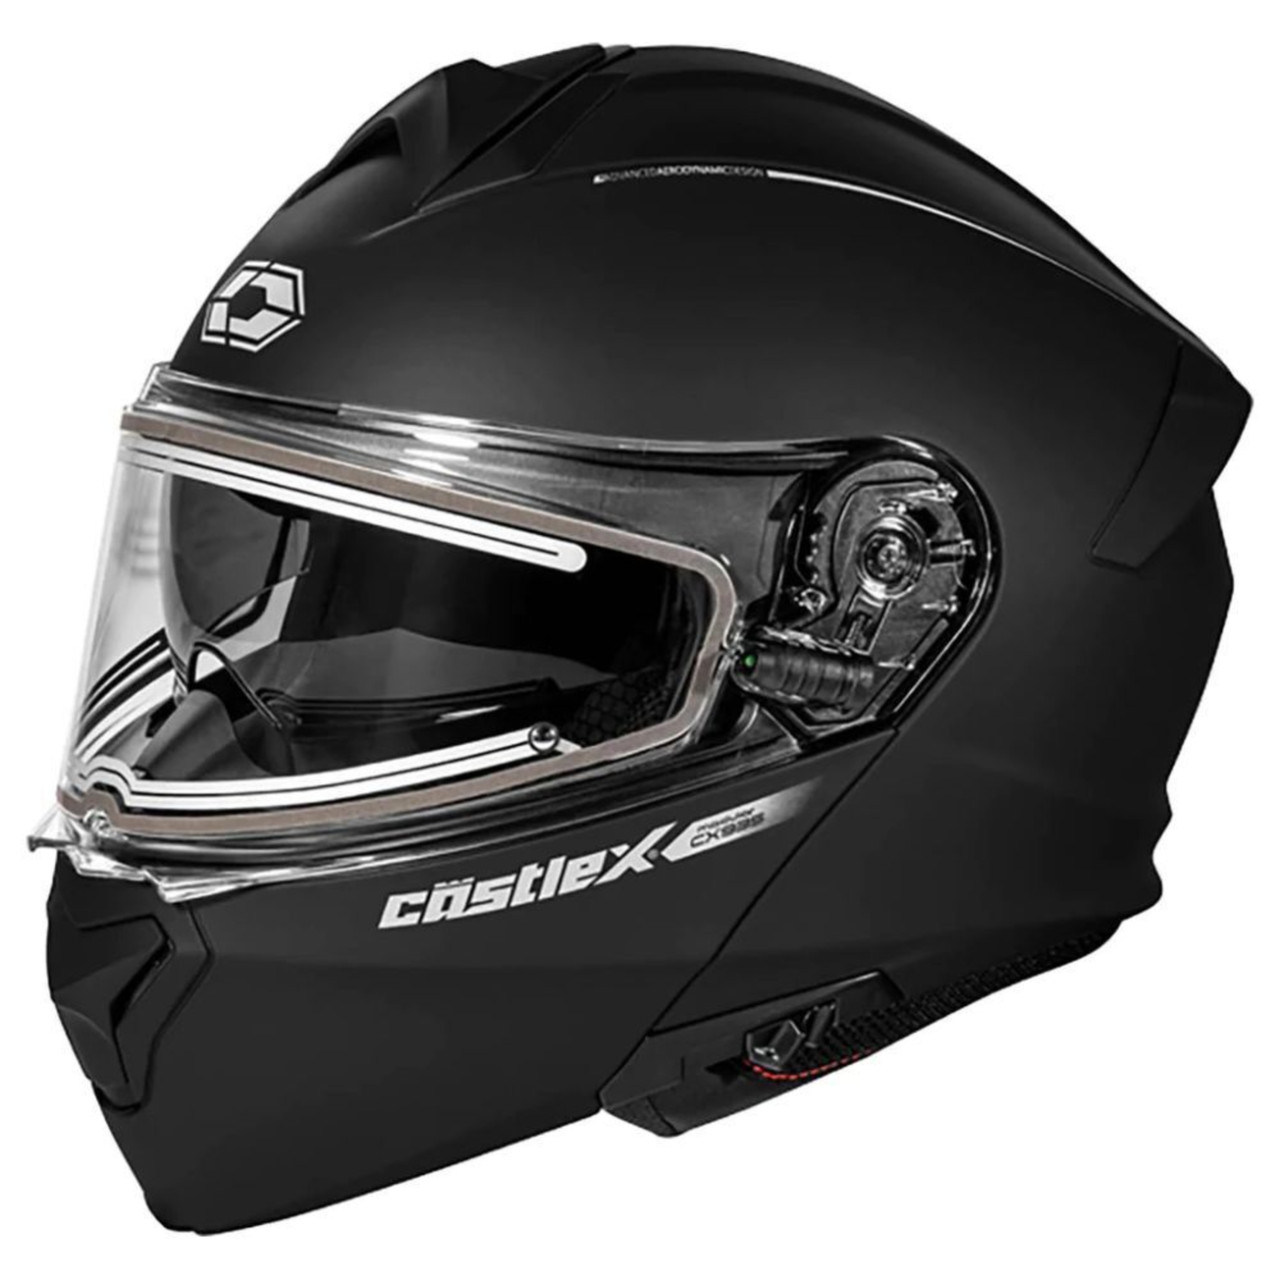 Castle X New 3X-Large Matte Black CX935 Snowmobile Helmet, 36-16089T